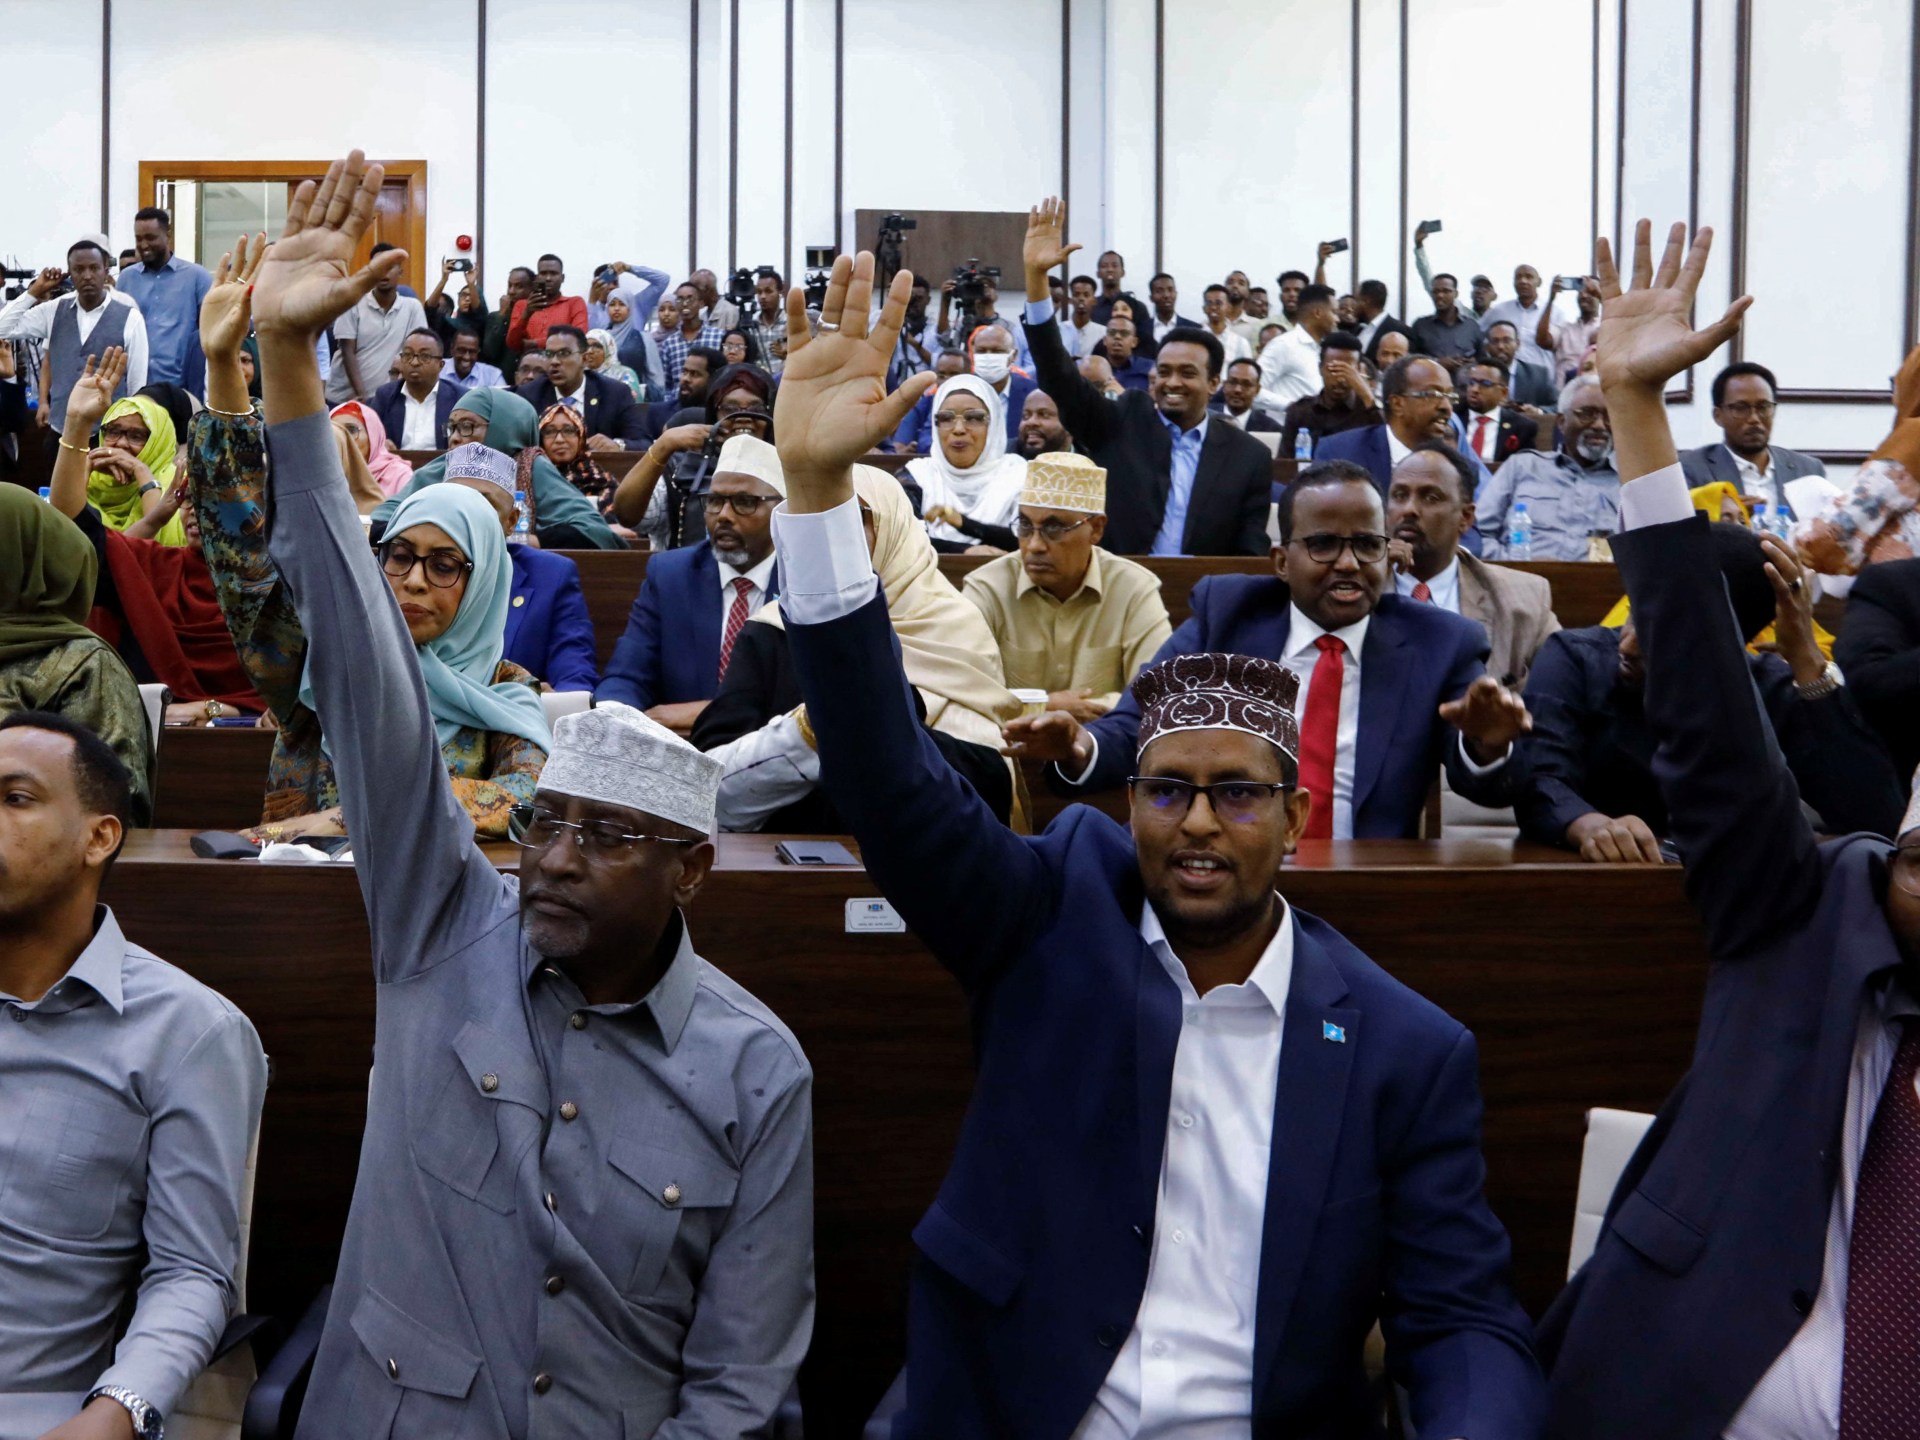 الصومال يعدل الدستور ويتحول إلى النظام الرئاسي | أخبار – البوكس نيوز